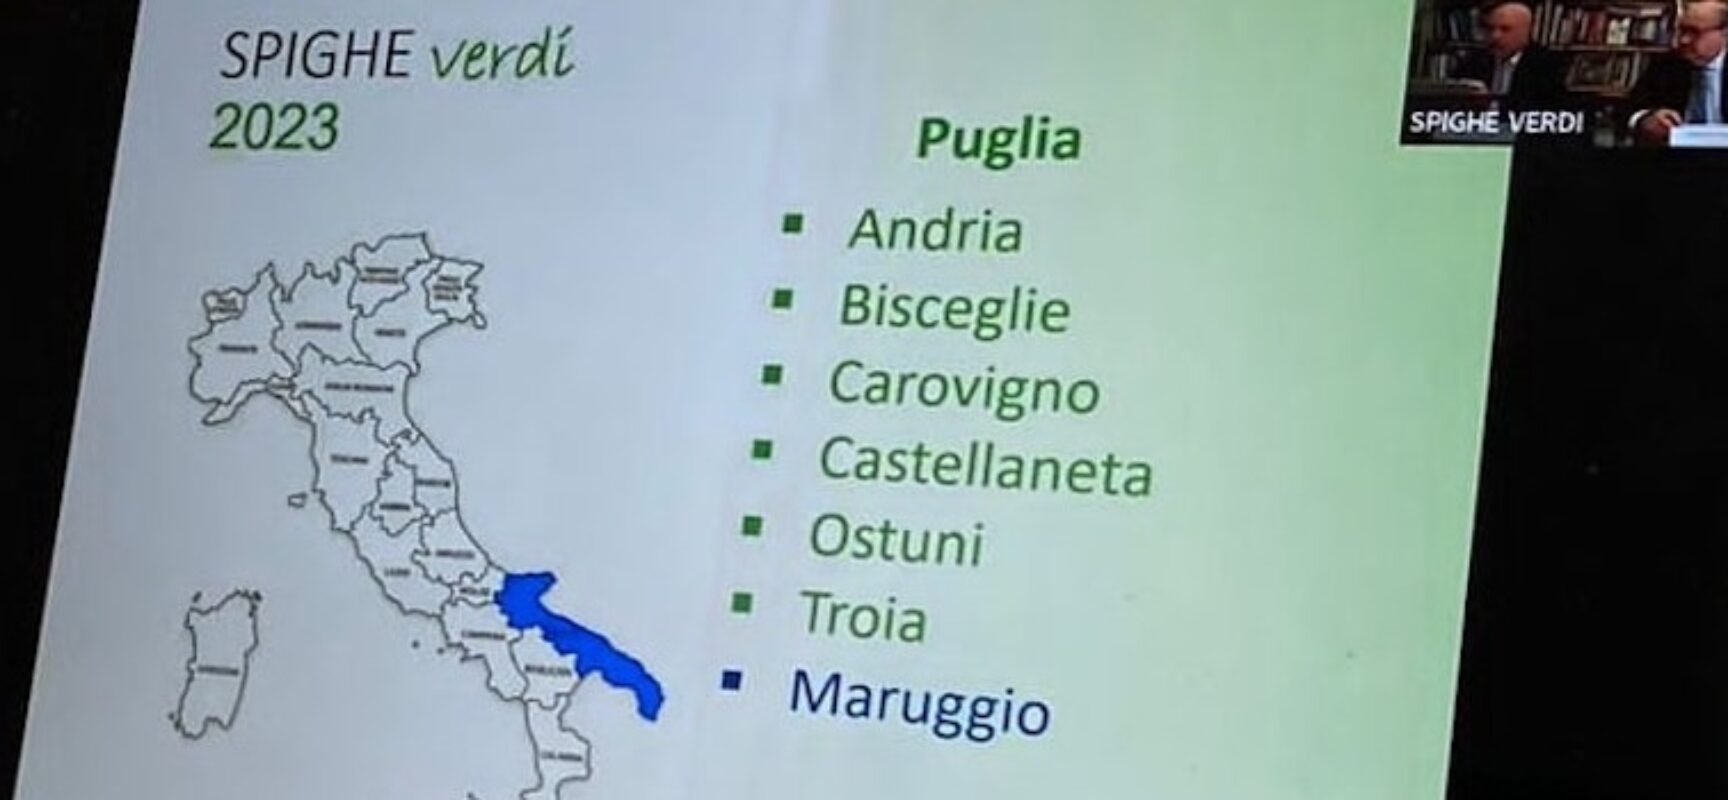 Bisceglie entra per il quarto anno consecutivo nel novero dei Comuni italiani Spighe Verdi